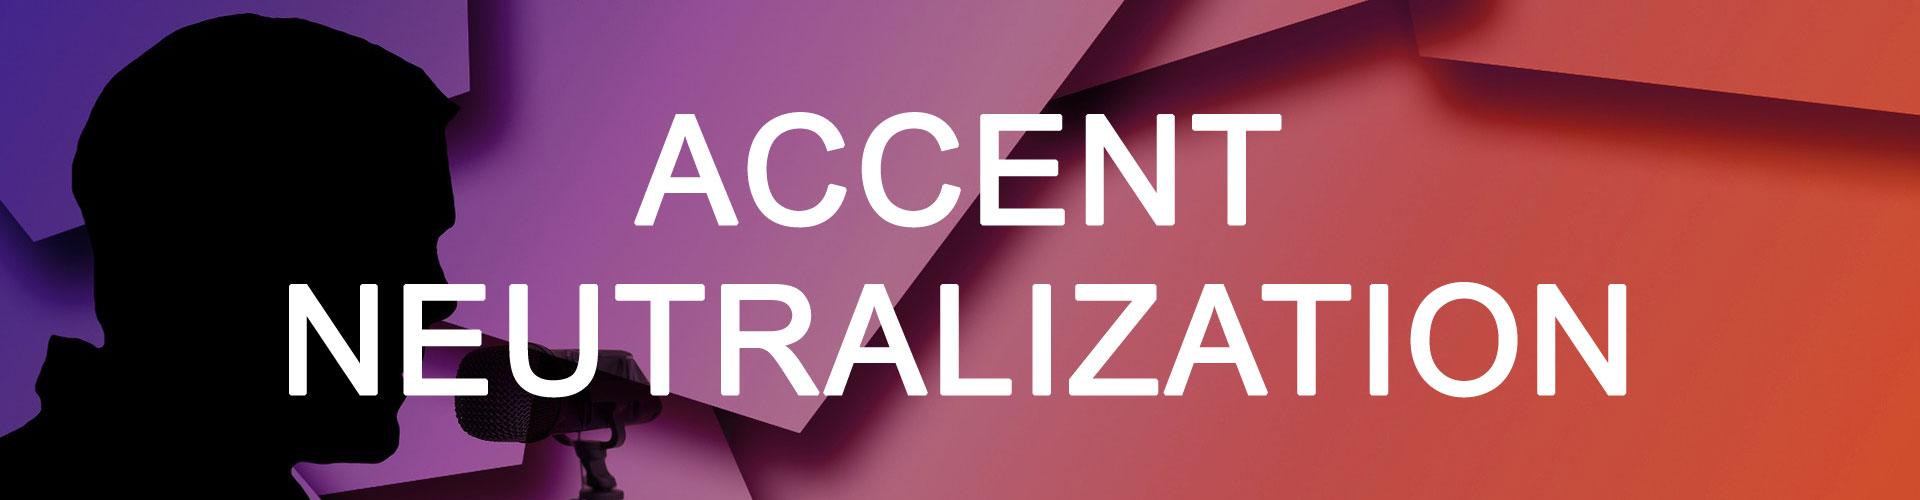 Accent Neutralization Banner